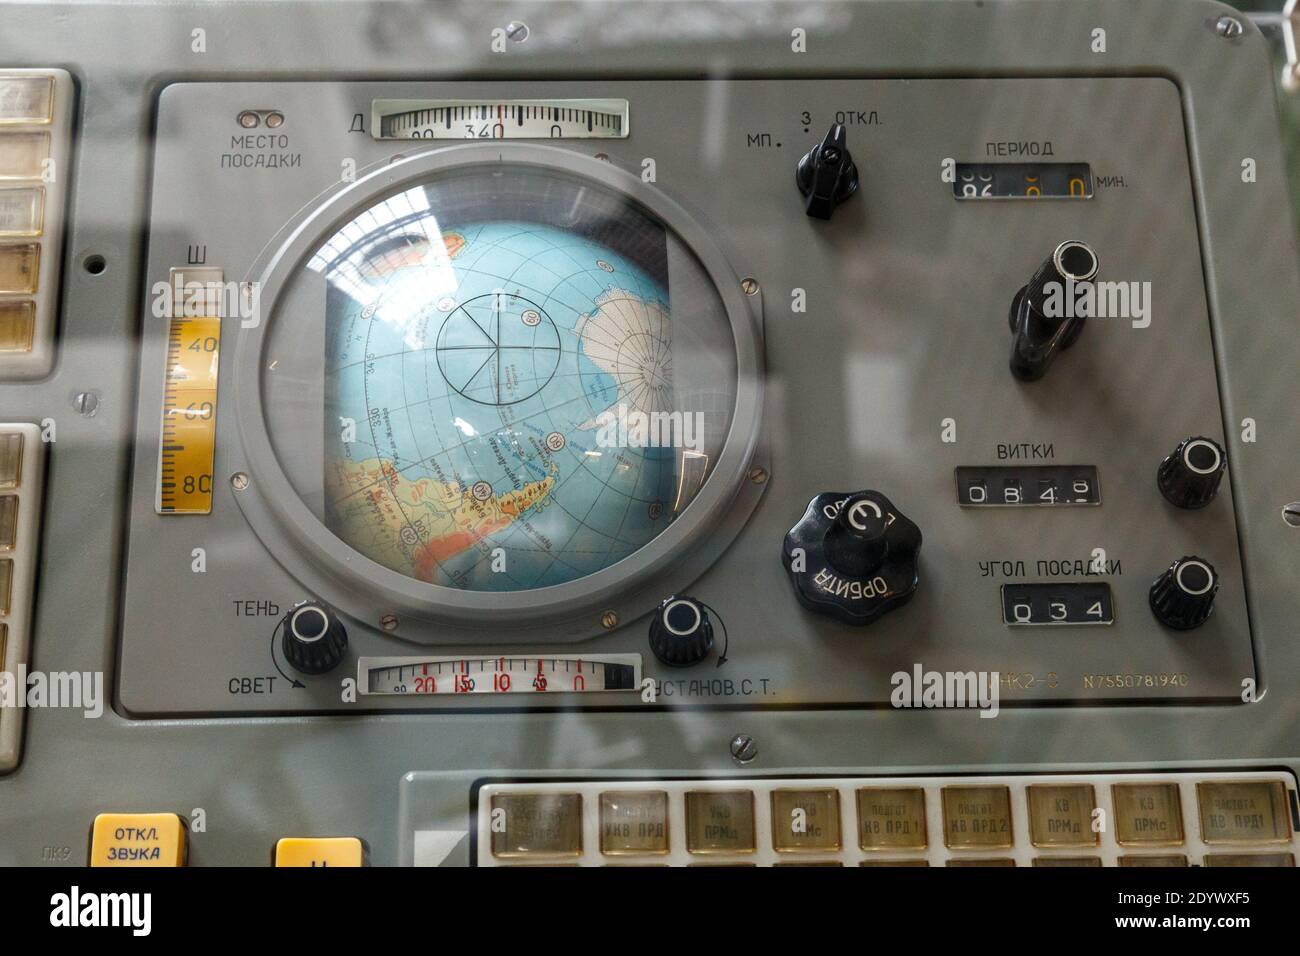 Moskau, Russland - 28. November 2018: Das Bedienfeld des ersten Sojus-Raumschiffs. Alte Display-Navigationsleiste, Armaturenbrett-Ausstattung Stockfoto